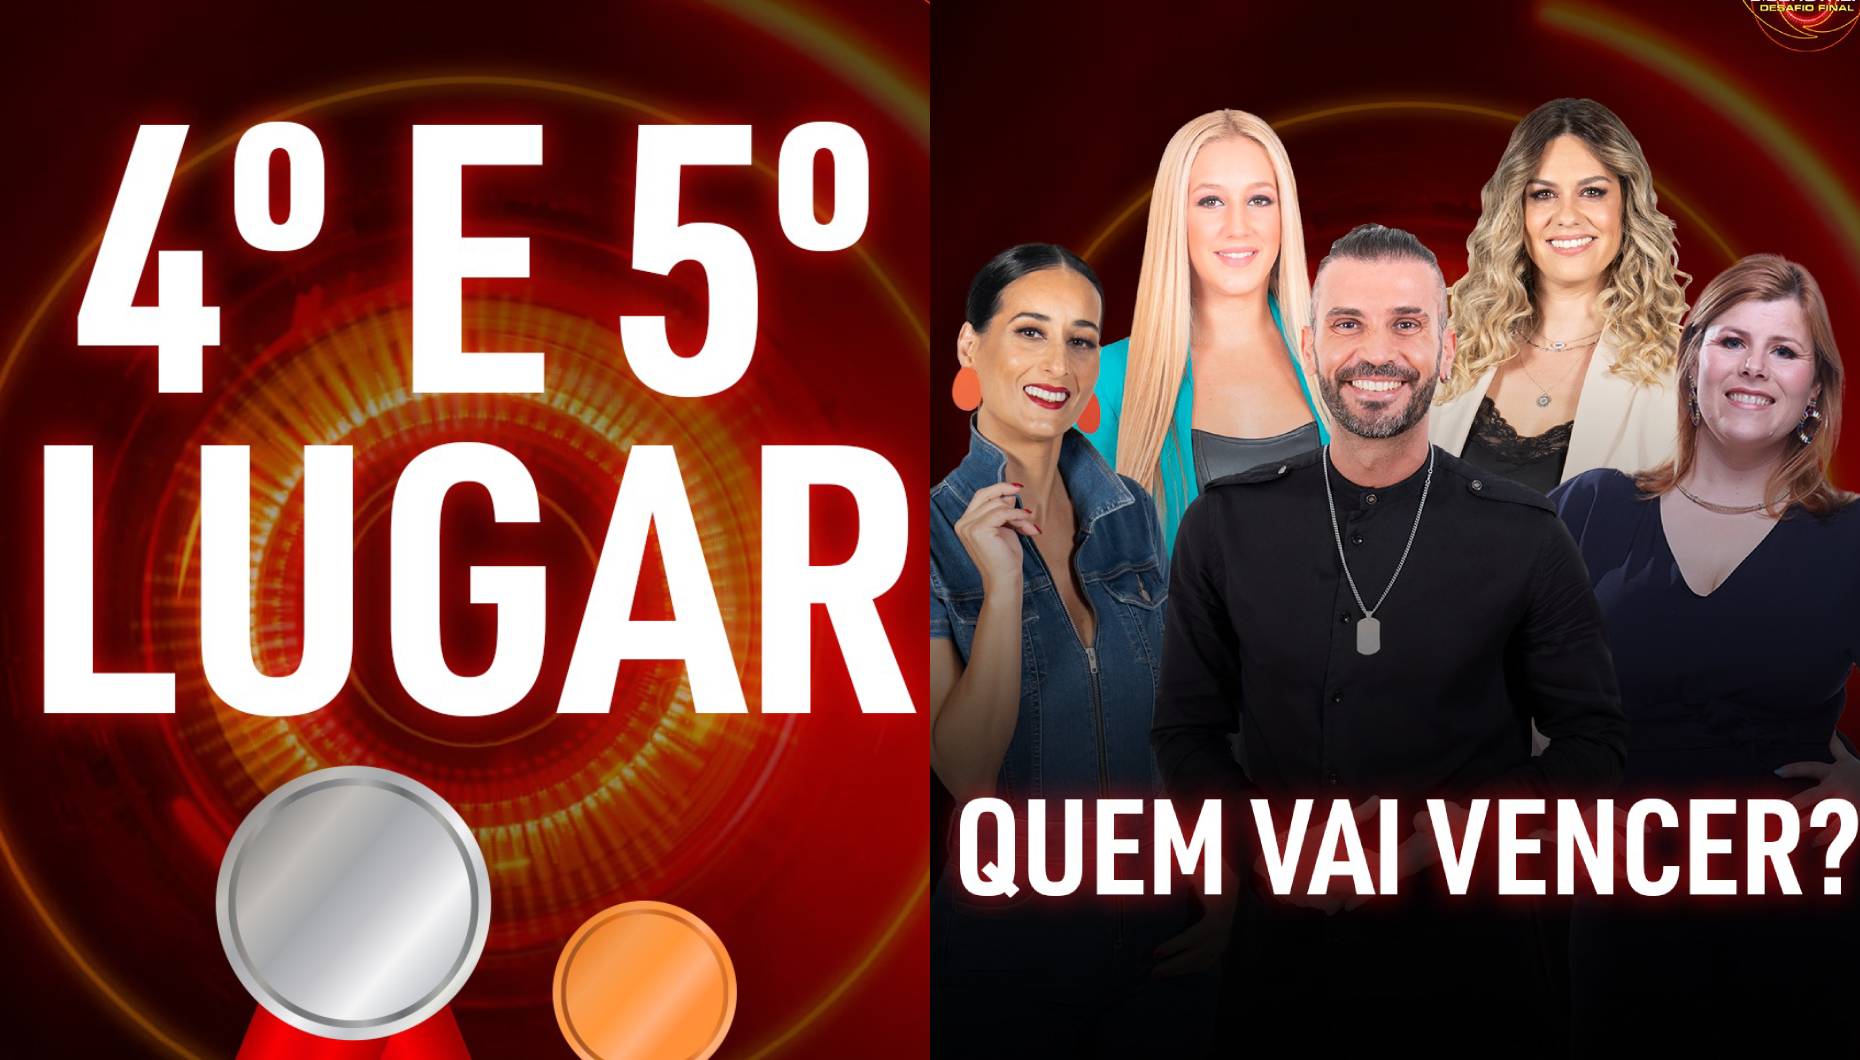 "Desafio Final" do Big Brother: Meia Final do reality show da TVI é daqui a algumas horas! Vê a sondagem!